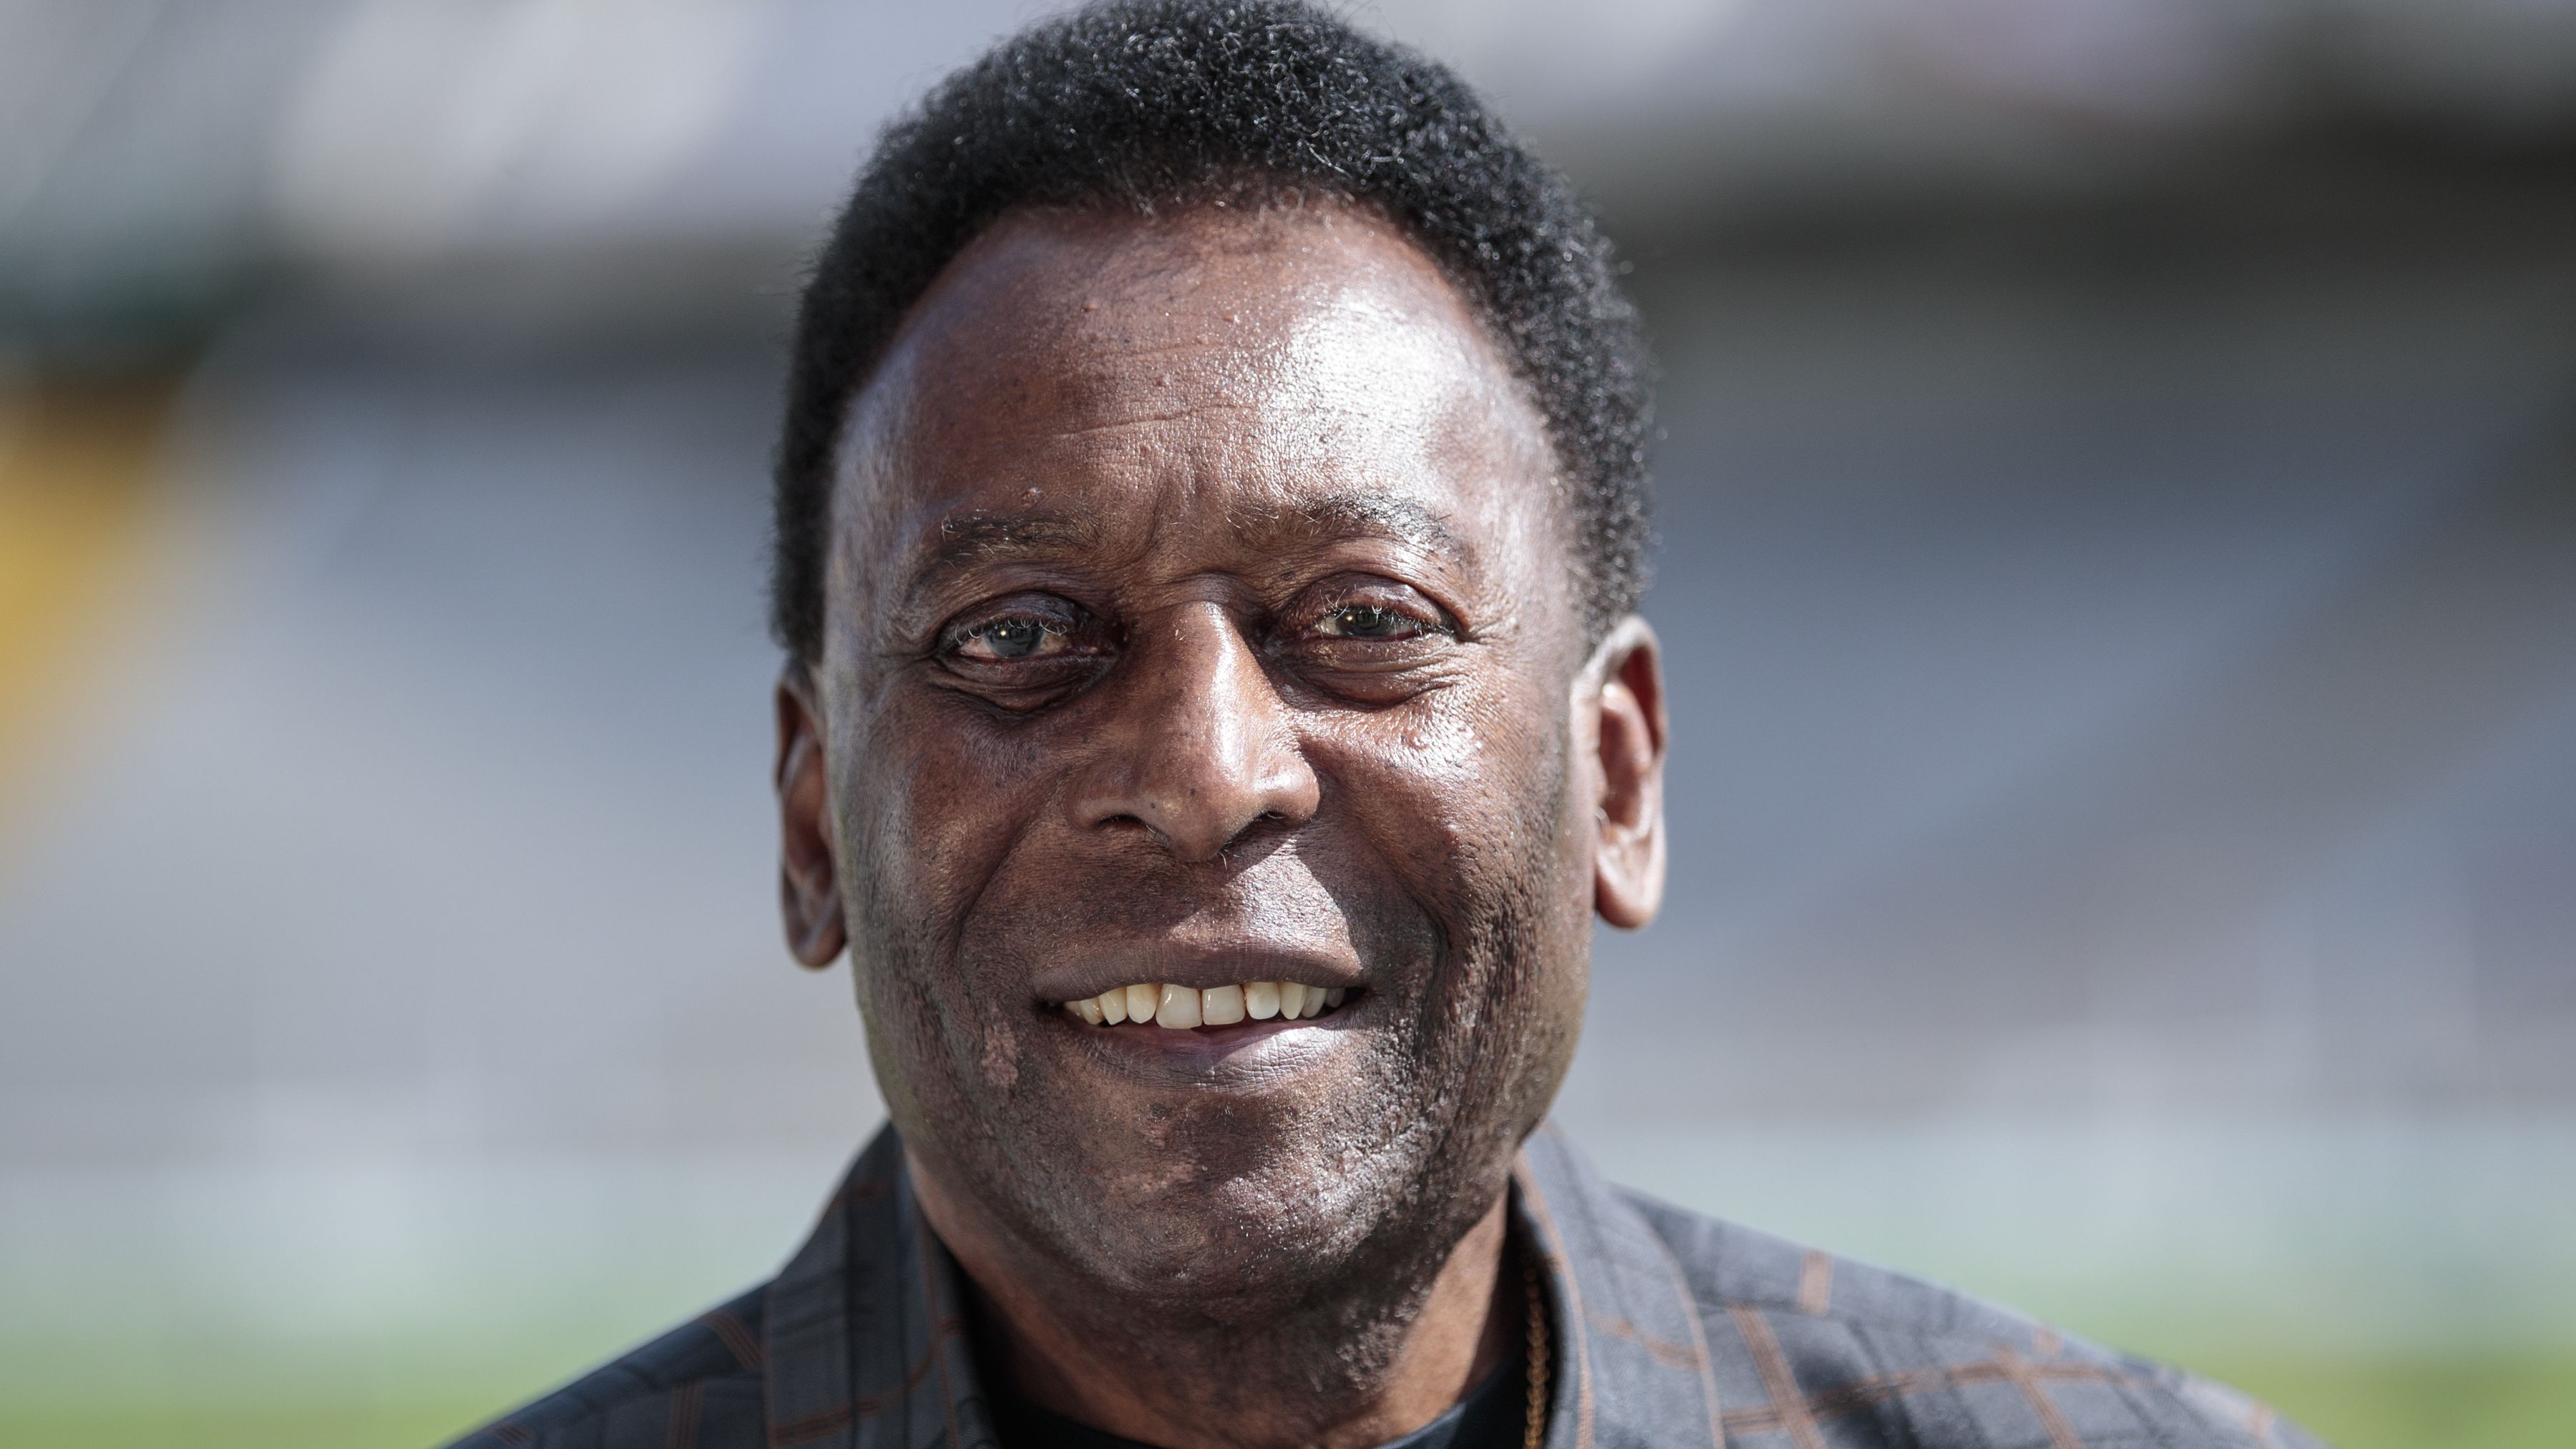 Morre Pelé, Rei do Futebol, aos 82 anos (Crédito: Getty Images)